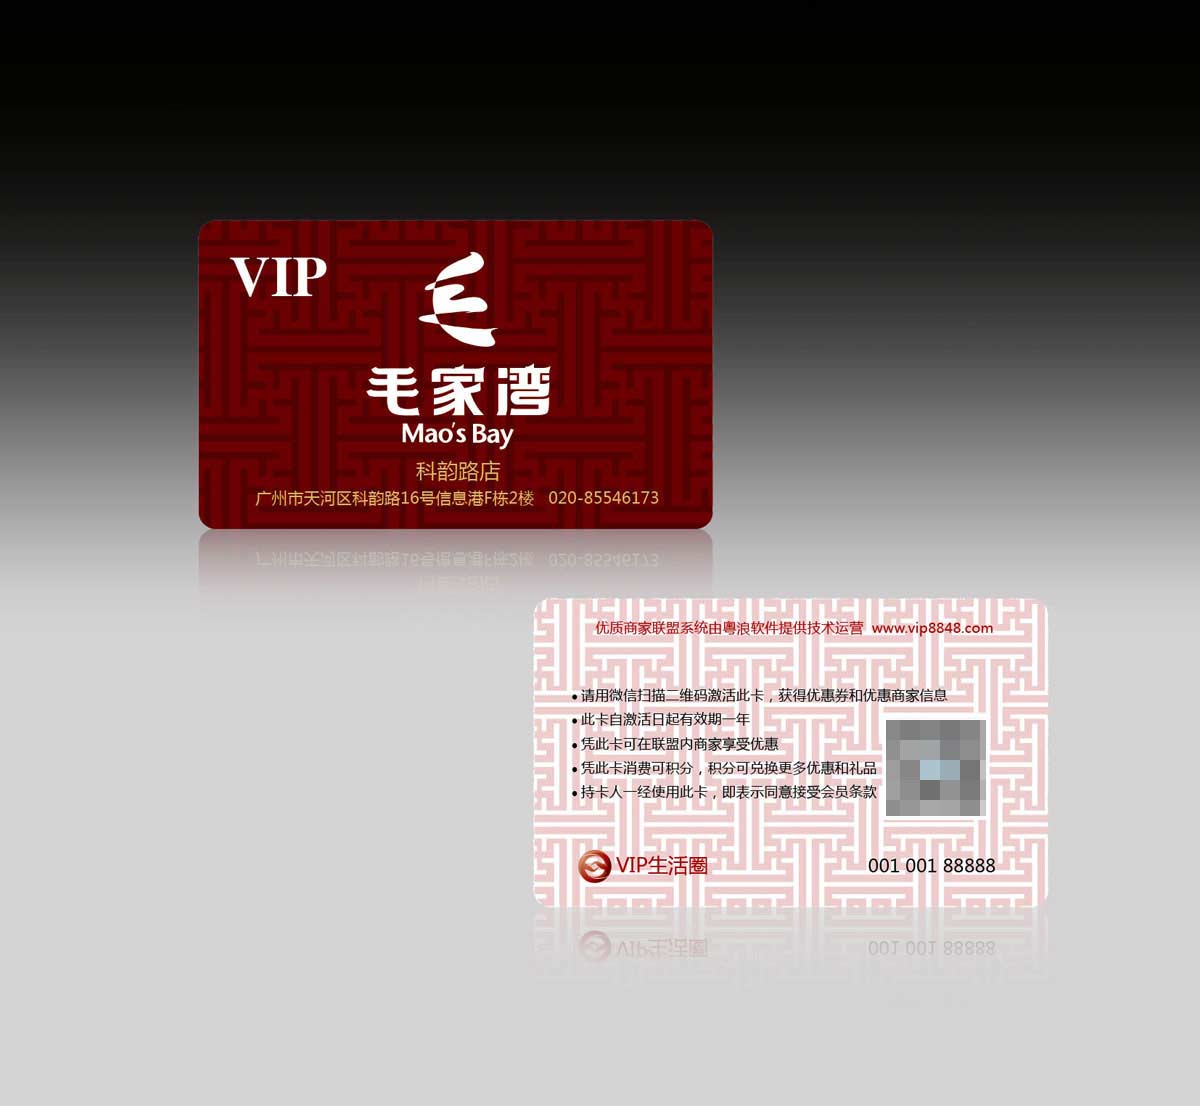 湘菜馆vip卡设计-毛家湾饭店vip卡设计公司